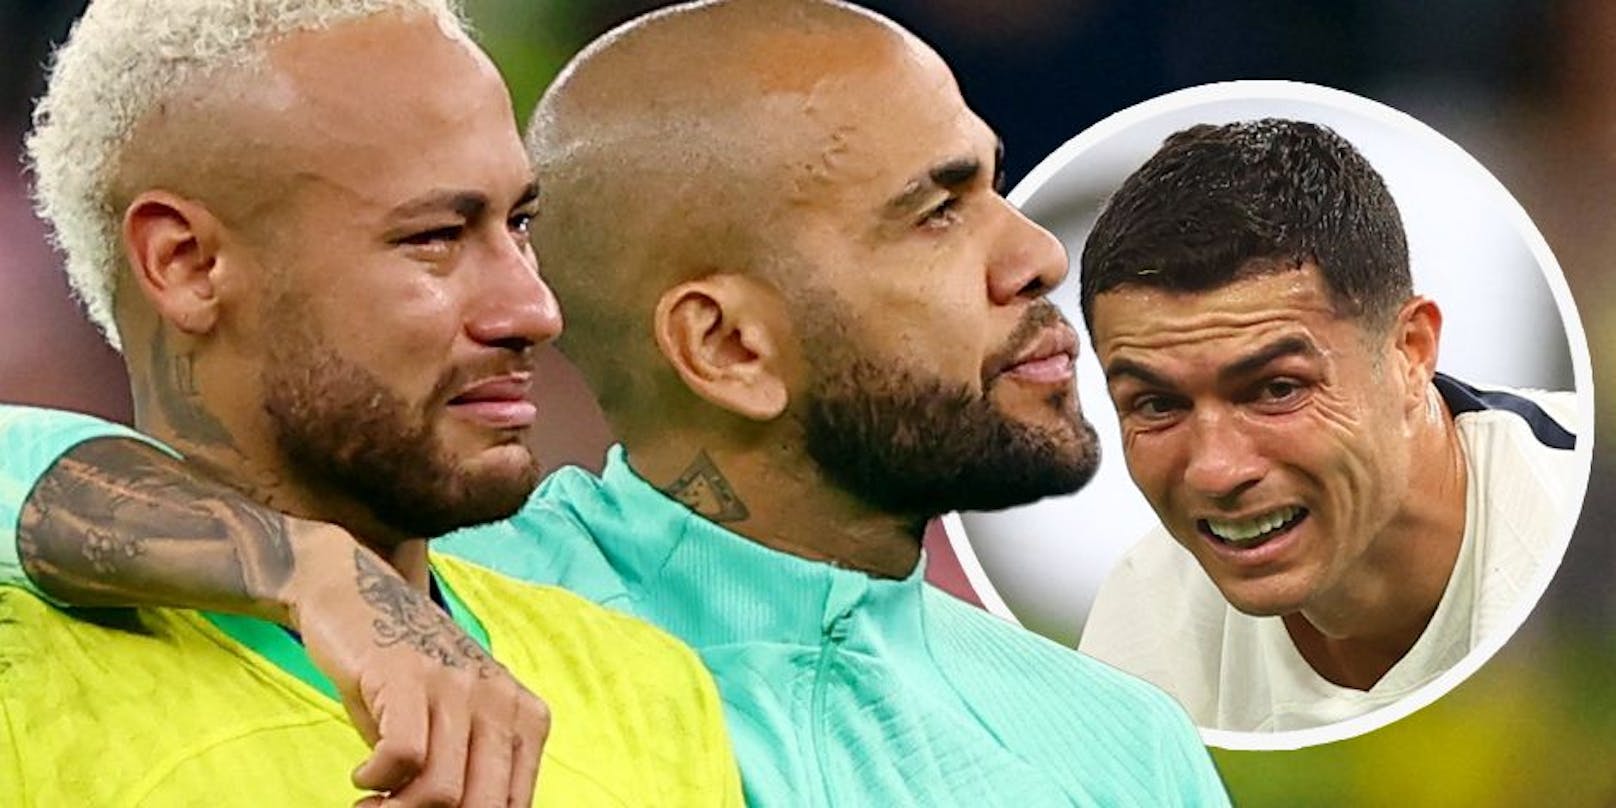 Bittere Tränen bei der WM in Katar! Für diese Superstars platzten in der Wüste Lebensträume.